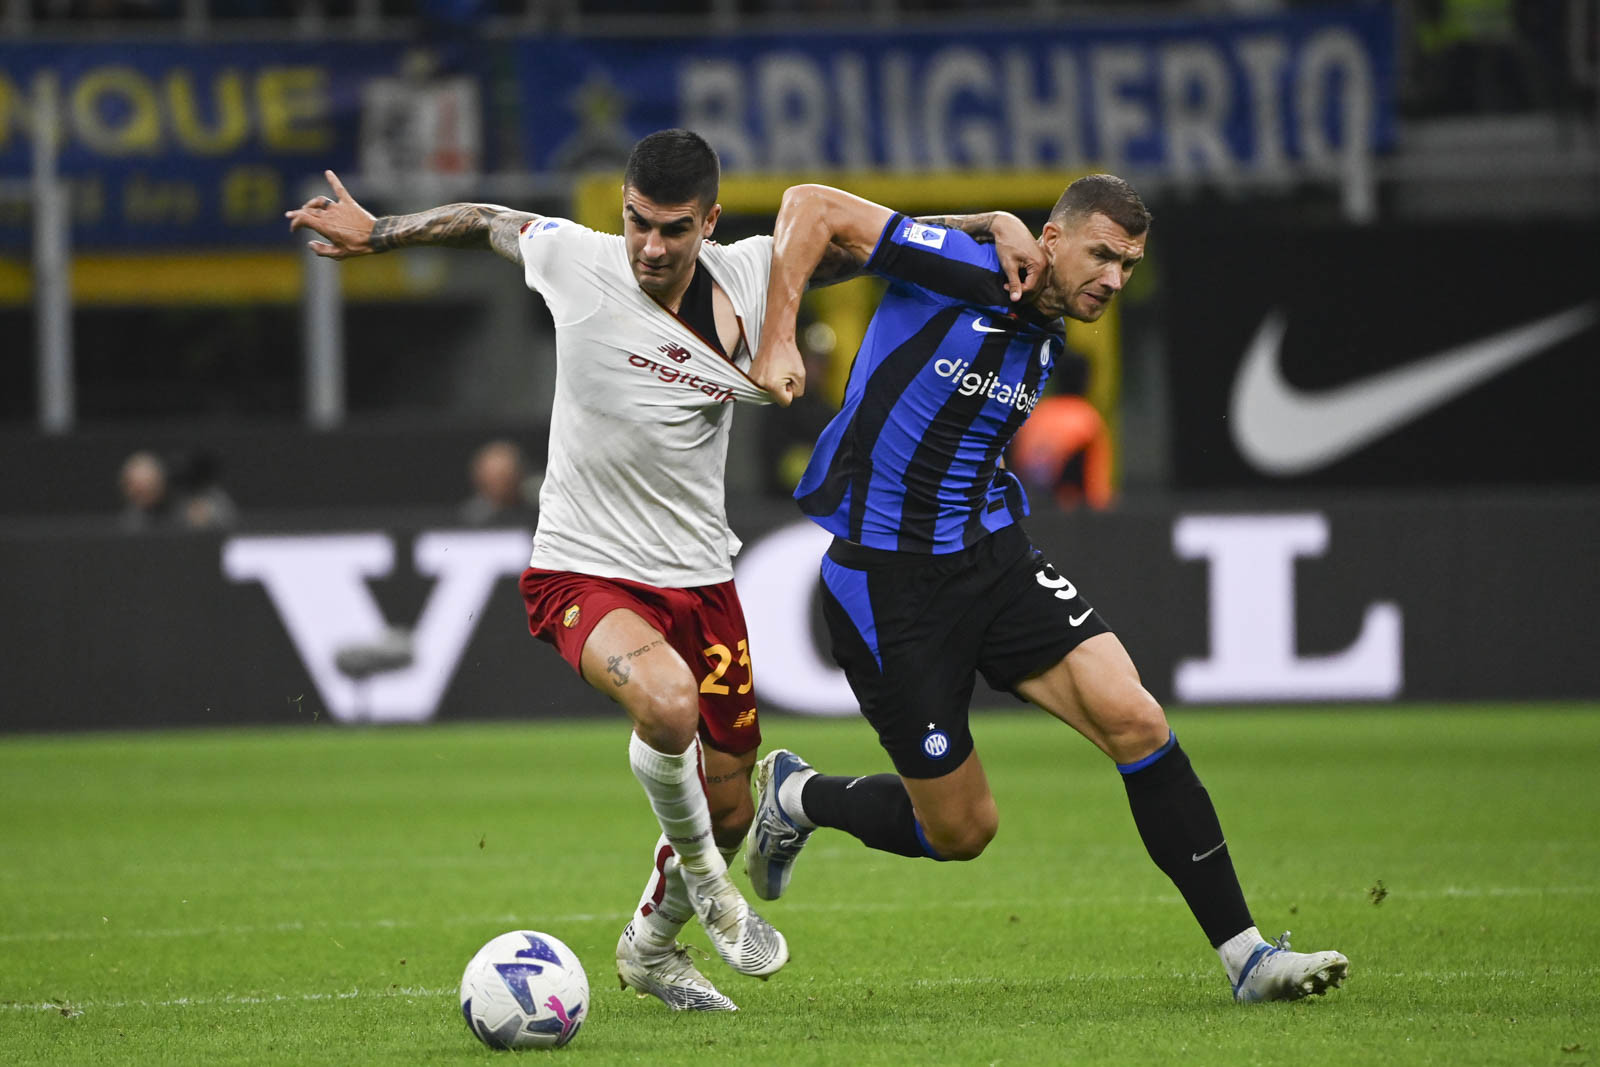 AS Roma làm khách trên sân của Inter ở vòng 8 Serie A mà không có sự dẫn dắt của HLV Jose Mourinho vì án cấm chỉ đạo